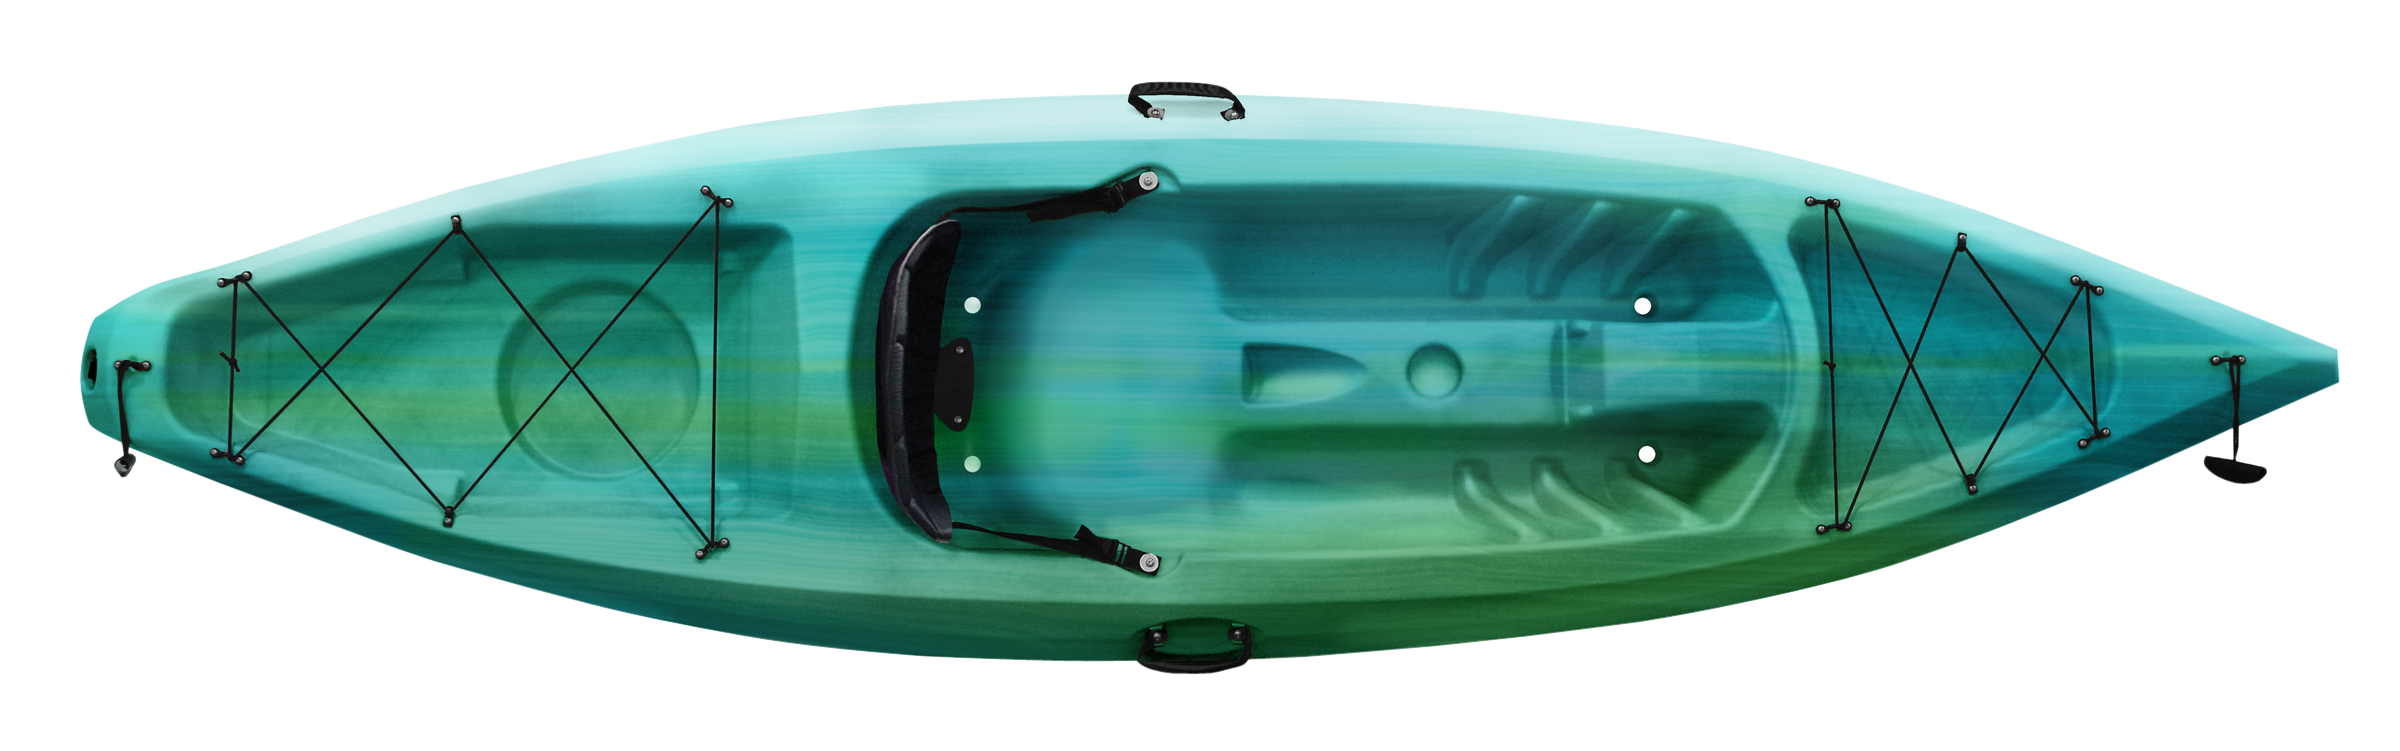 Kayaks: Explorer 10.4 by Future Beach - Image 3702